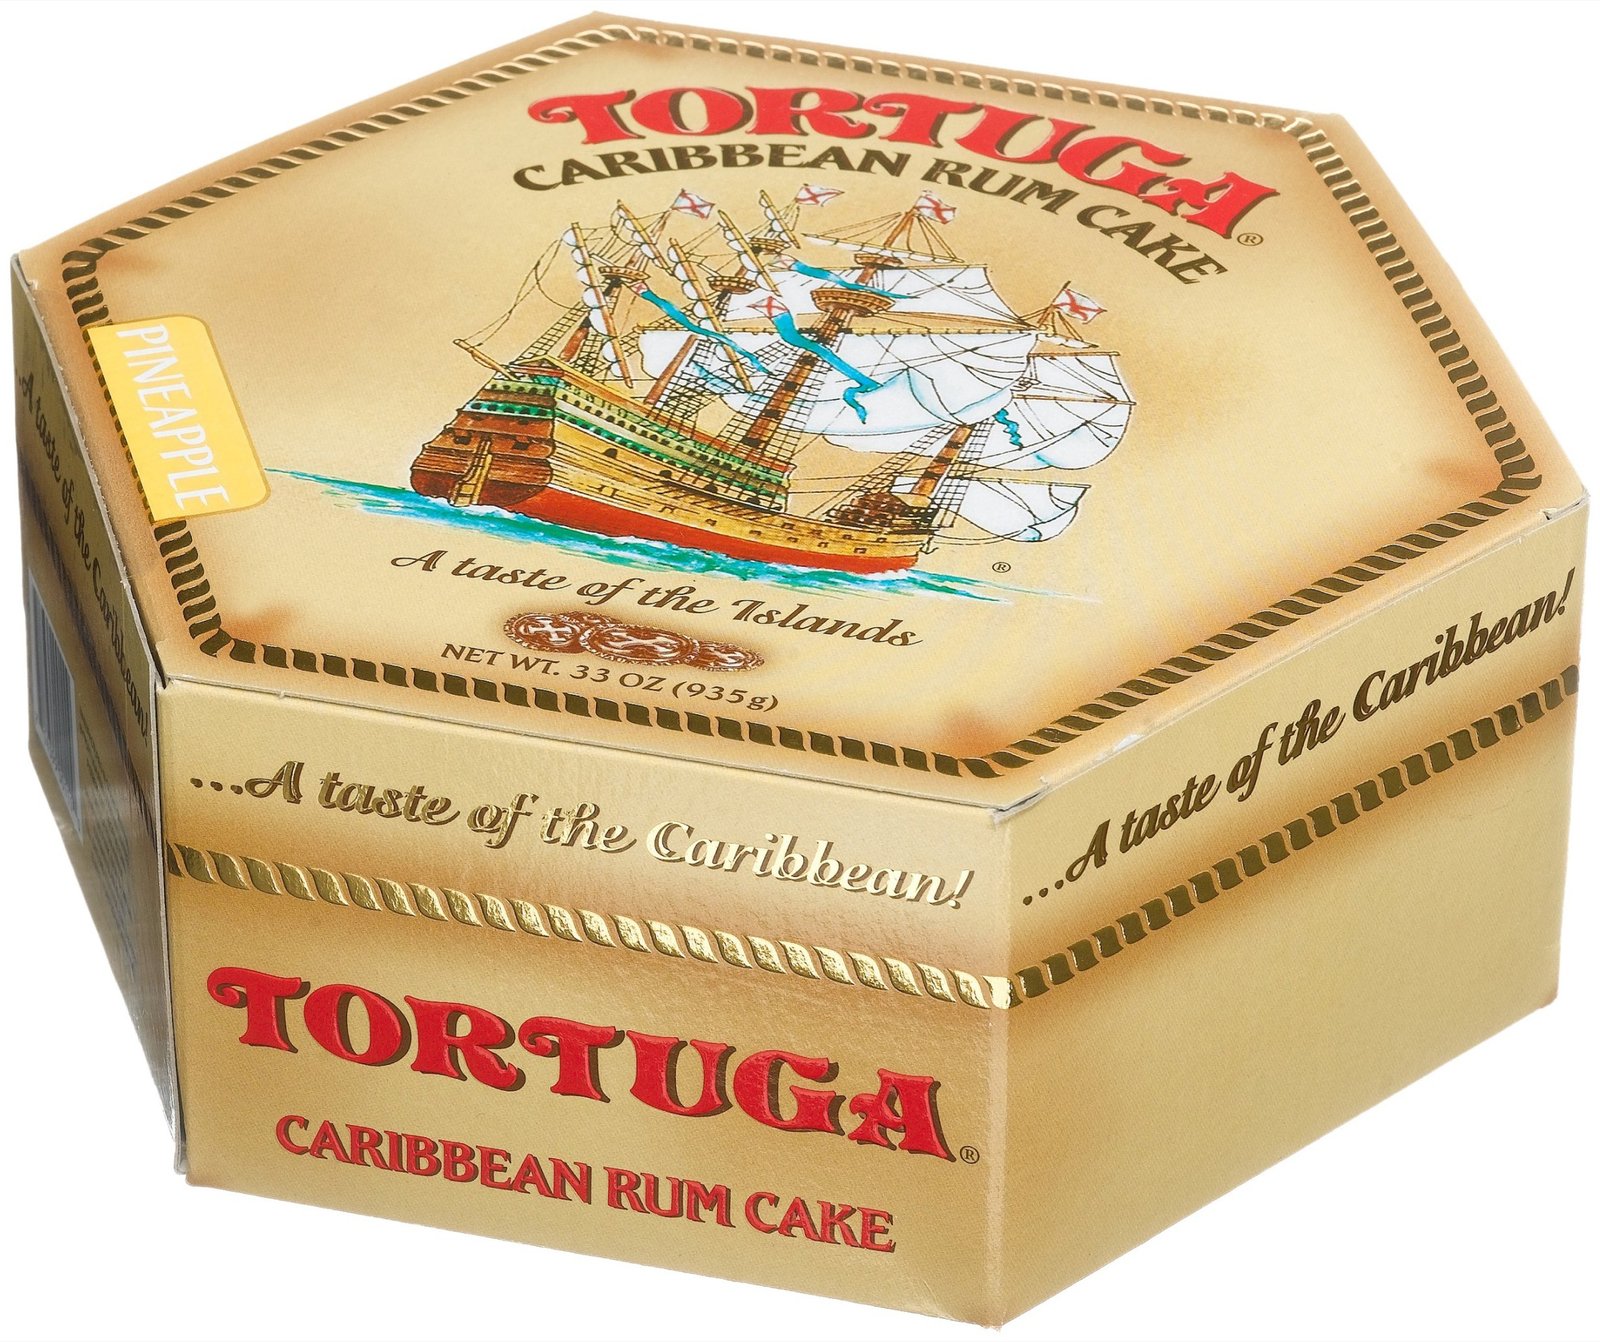 Tortuga Original Caribbean Rum Cake mod